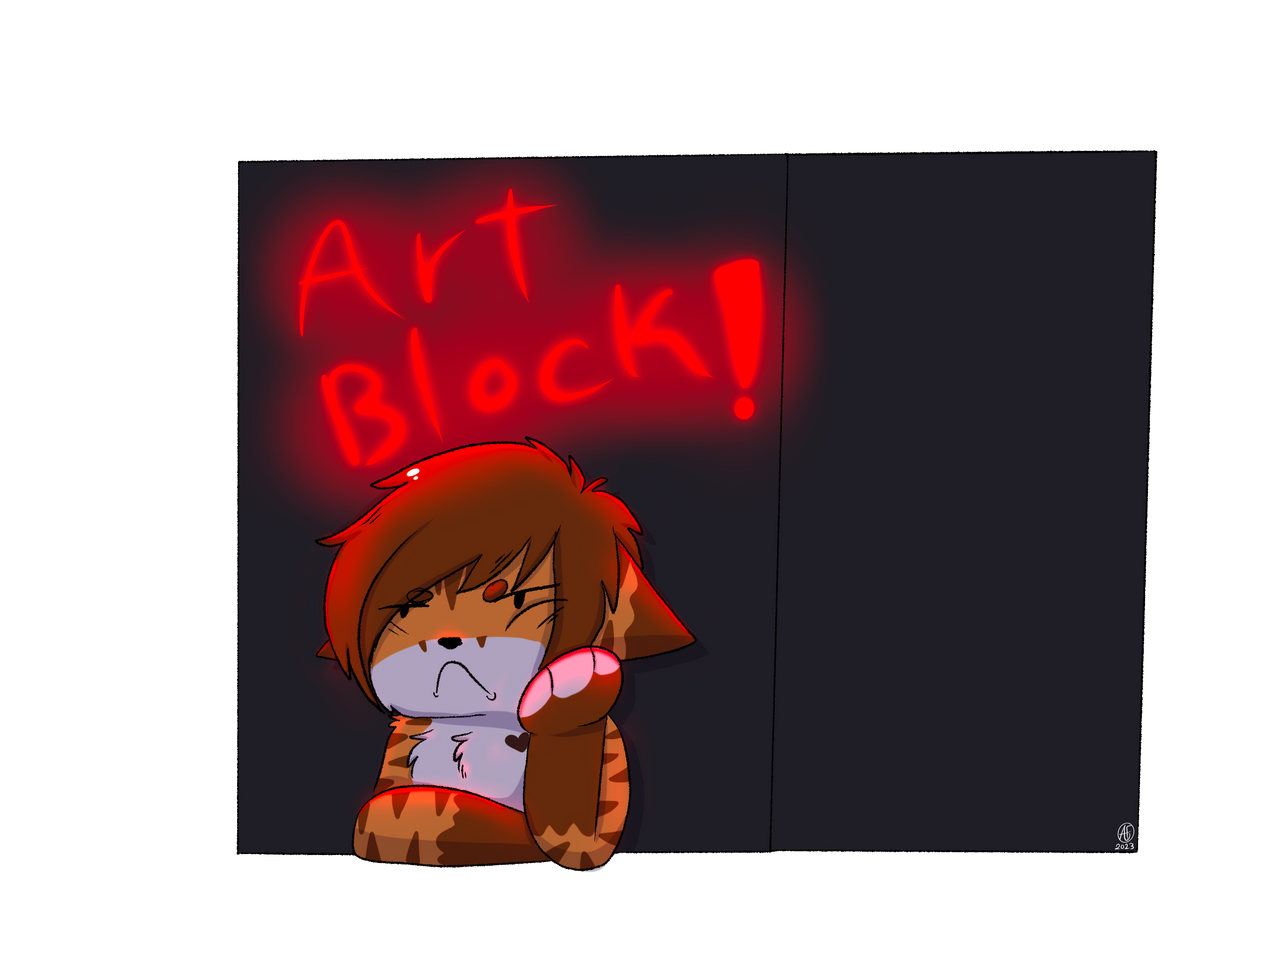 art block sucks smh #guests #robloxguest #fanart #art #digitalart #art